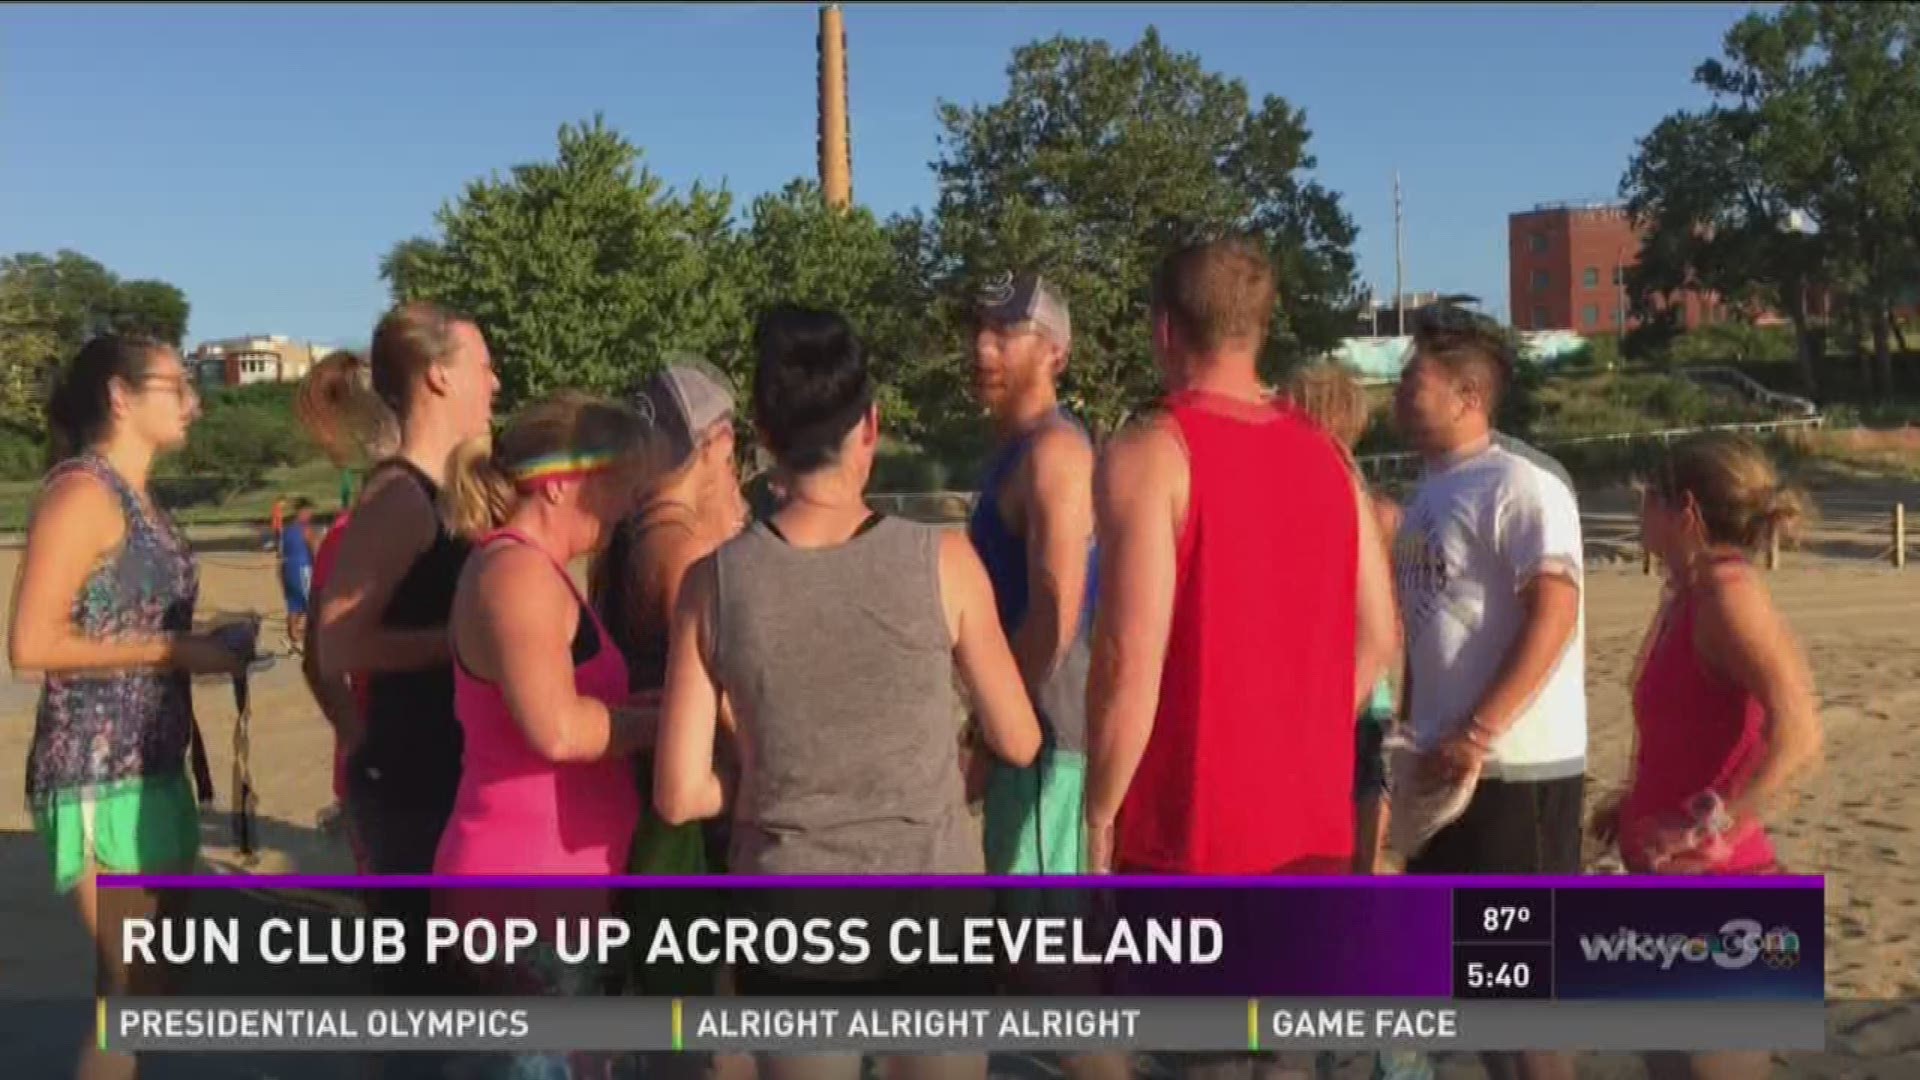 Run club pop ups across Cleveland